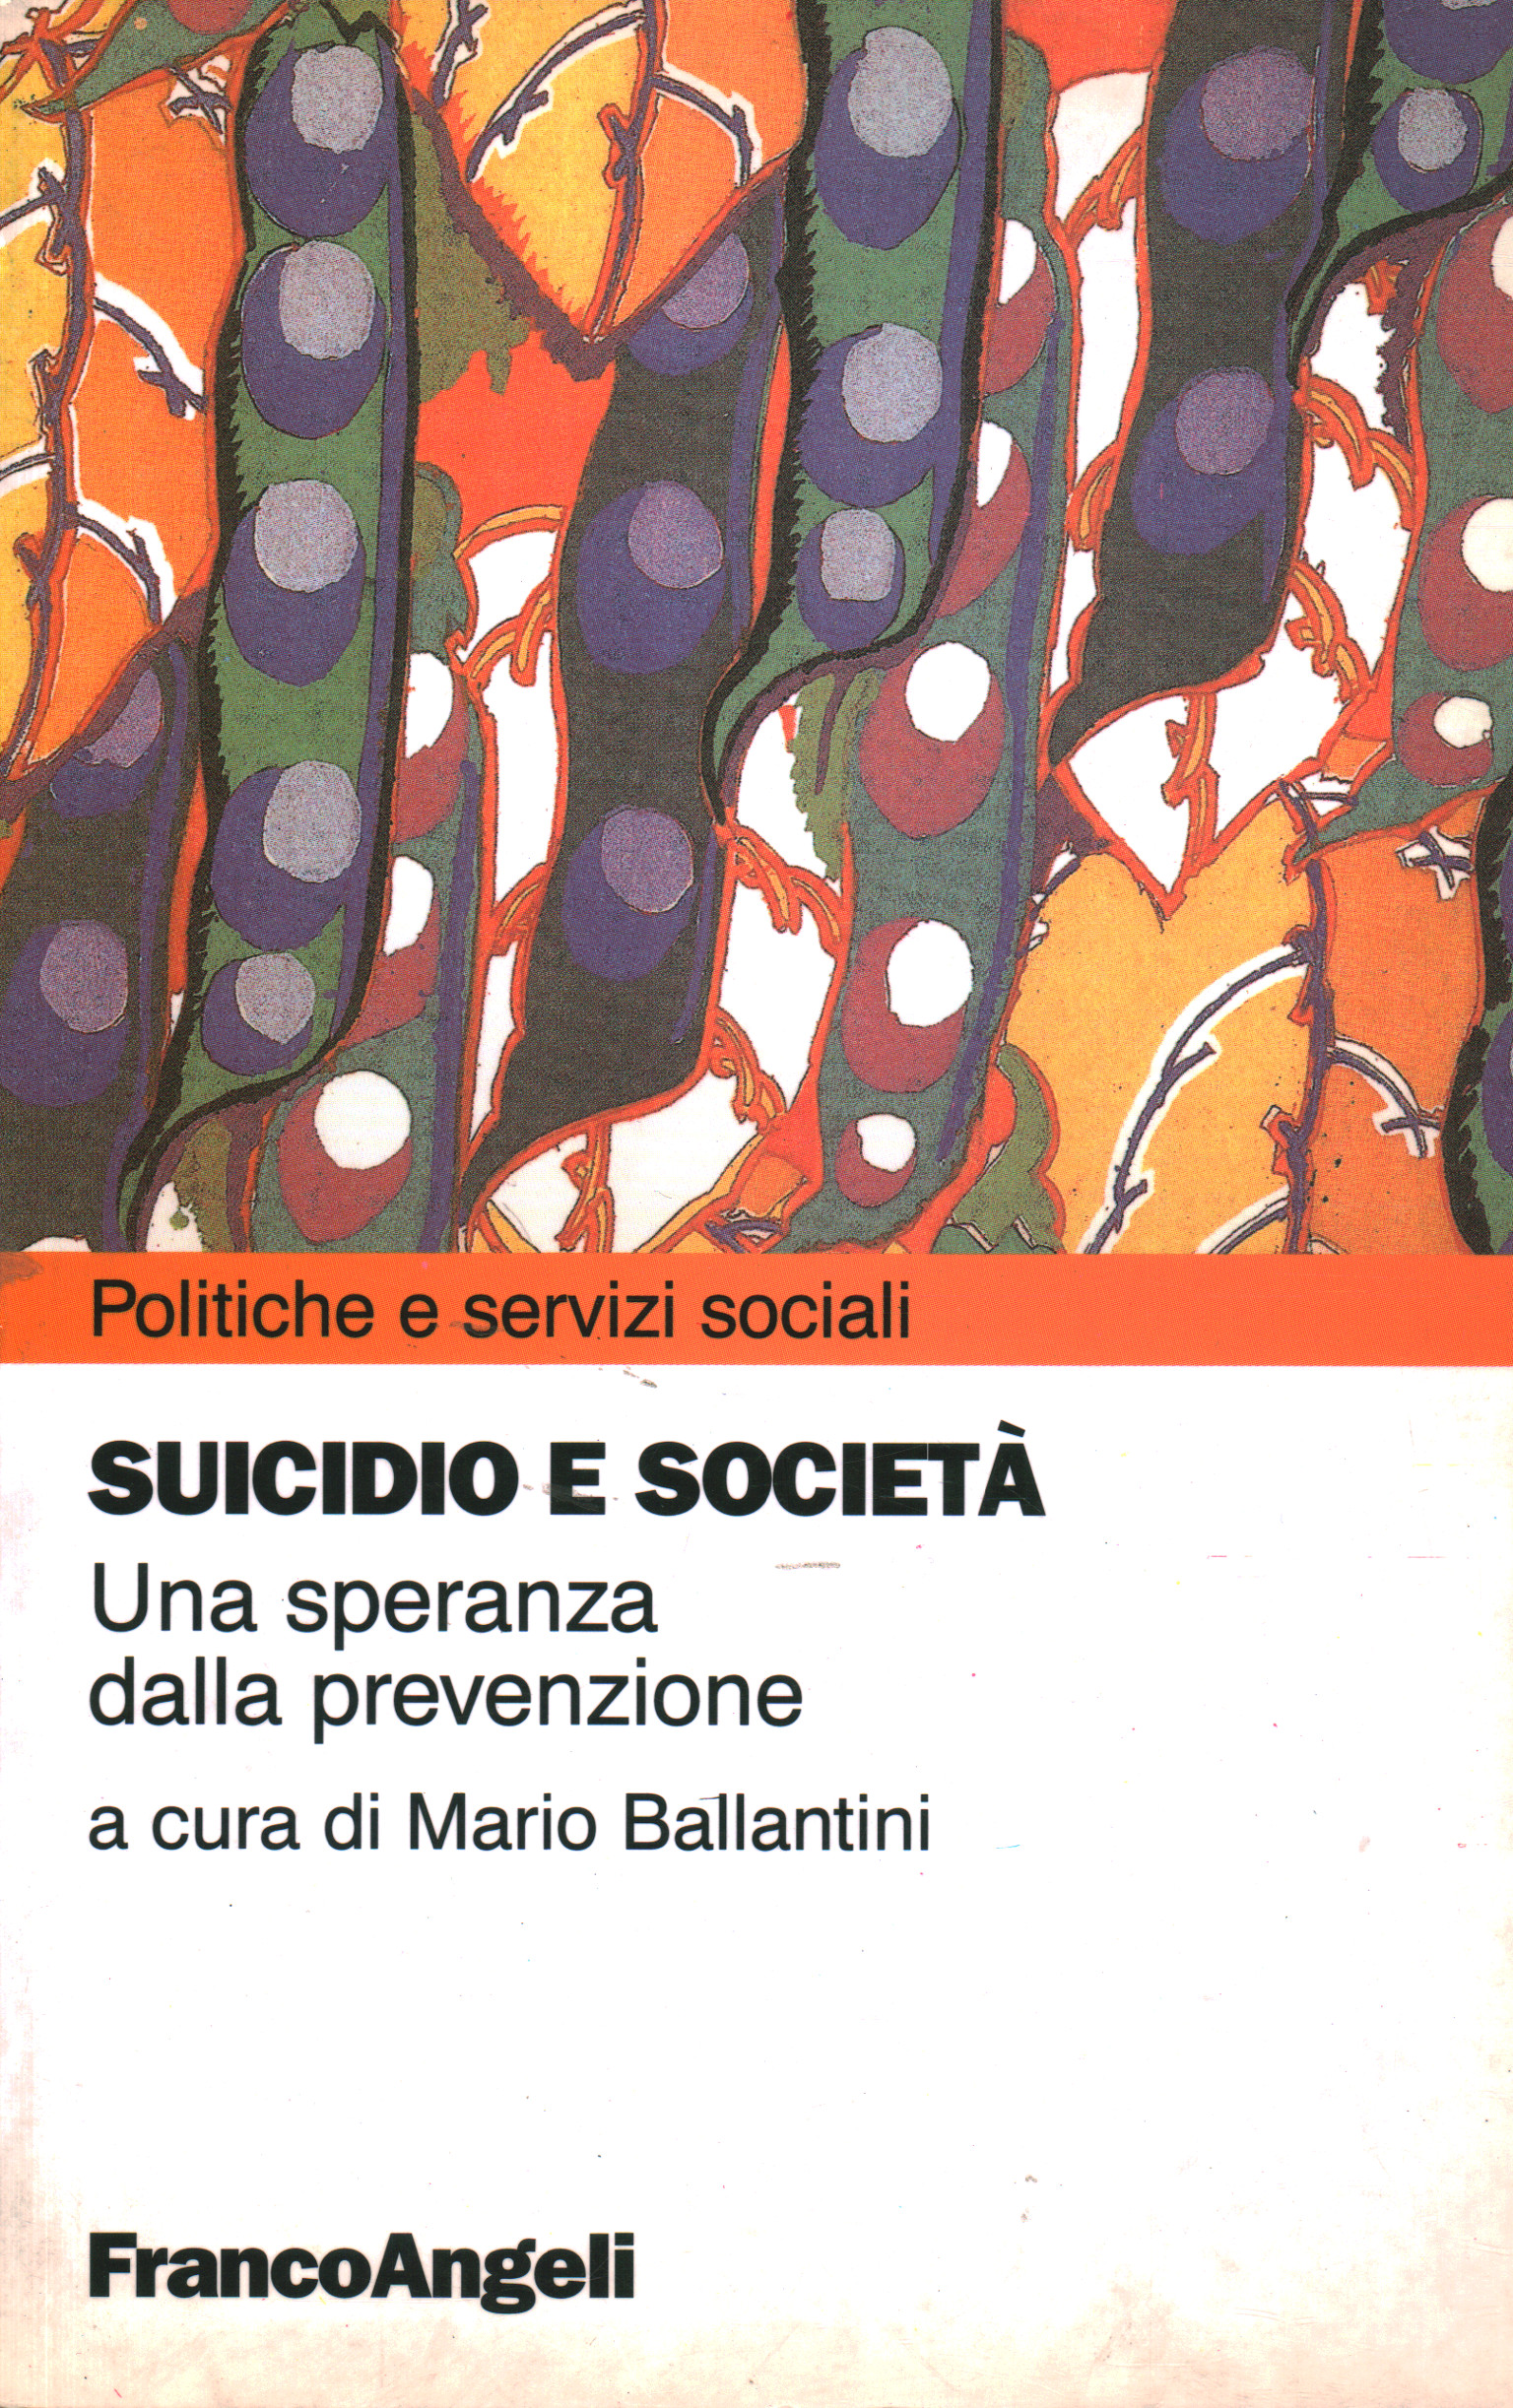 El suicidio y la sociedad, Mario Ballantini